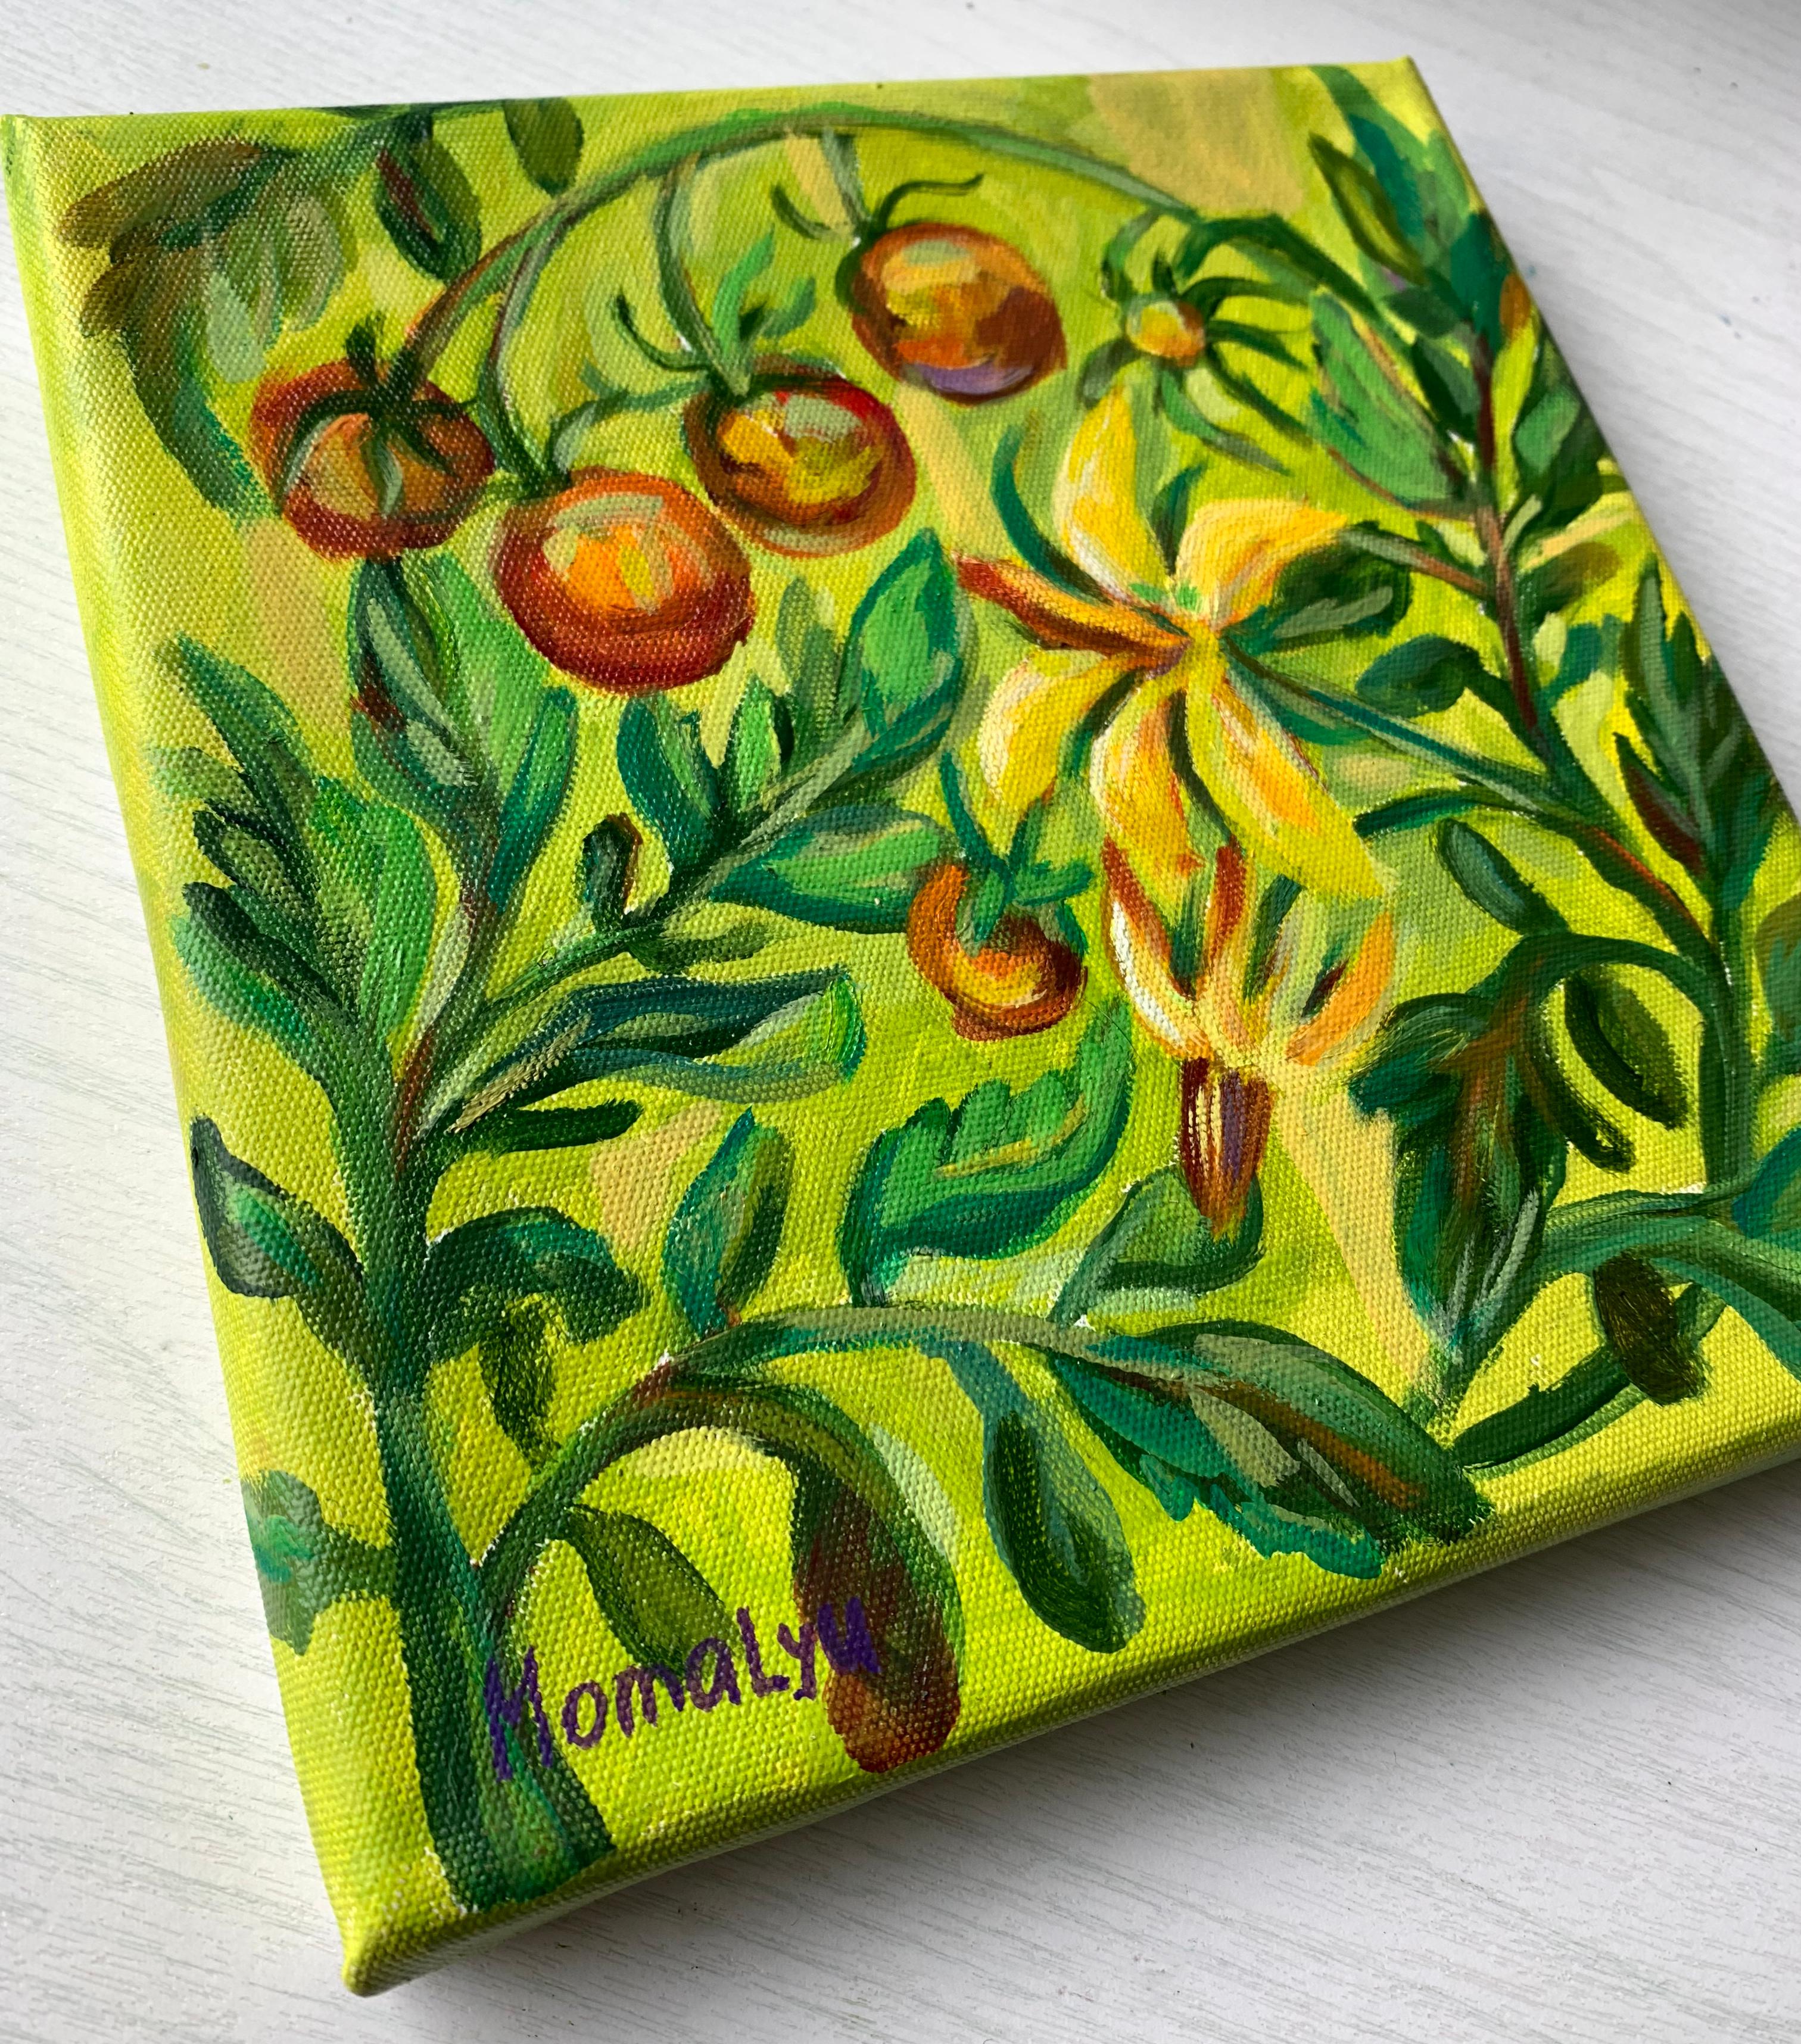 Taste of summer. Ornate plants. Miniature  oil painting.  - Painting by Momalyu Liubov